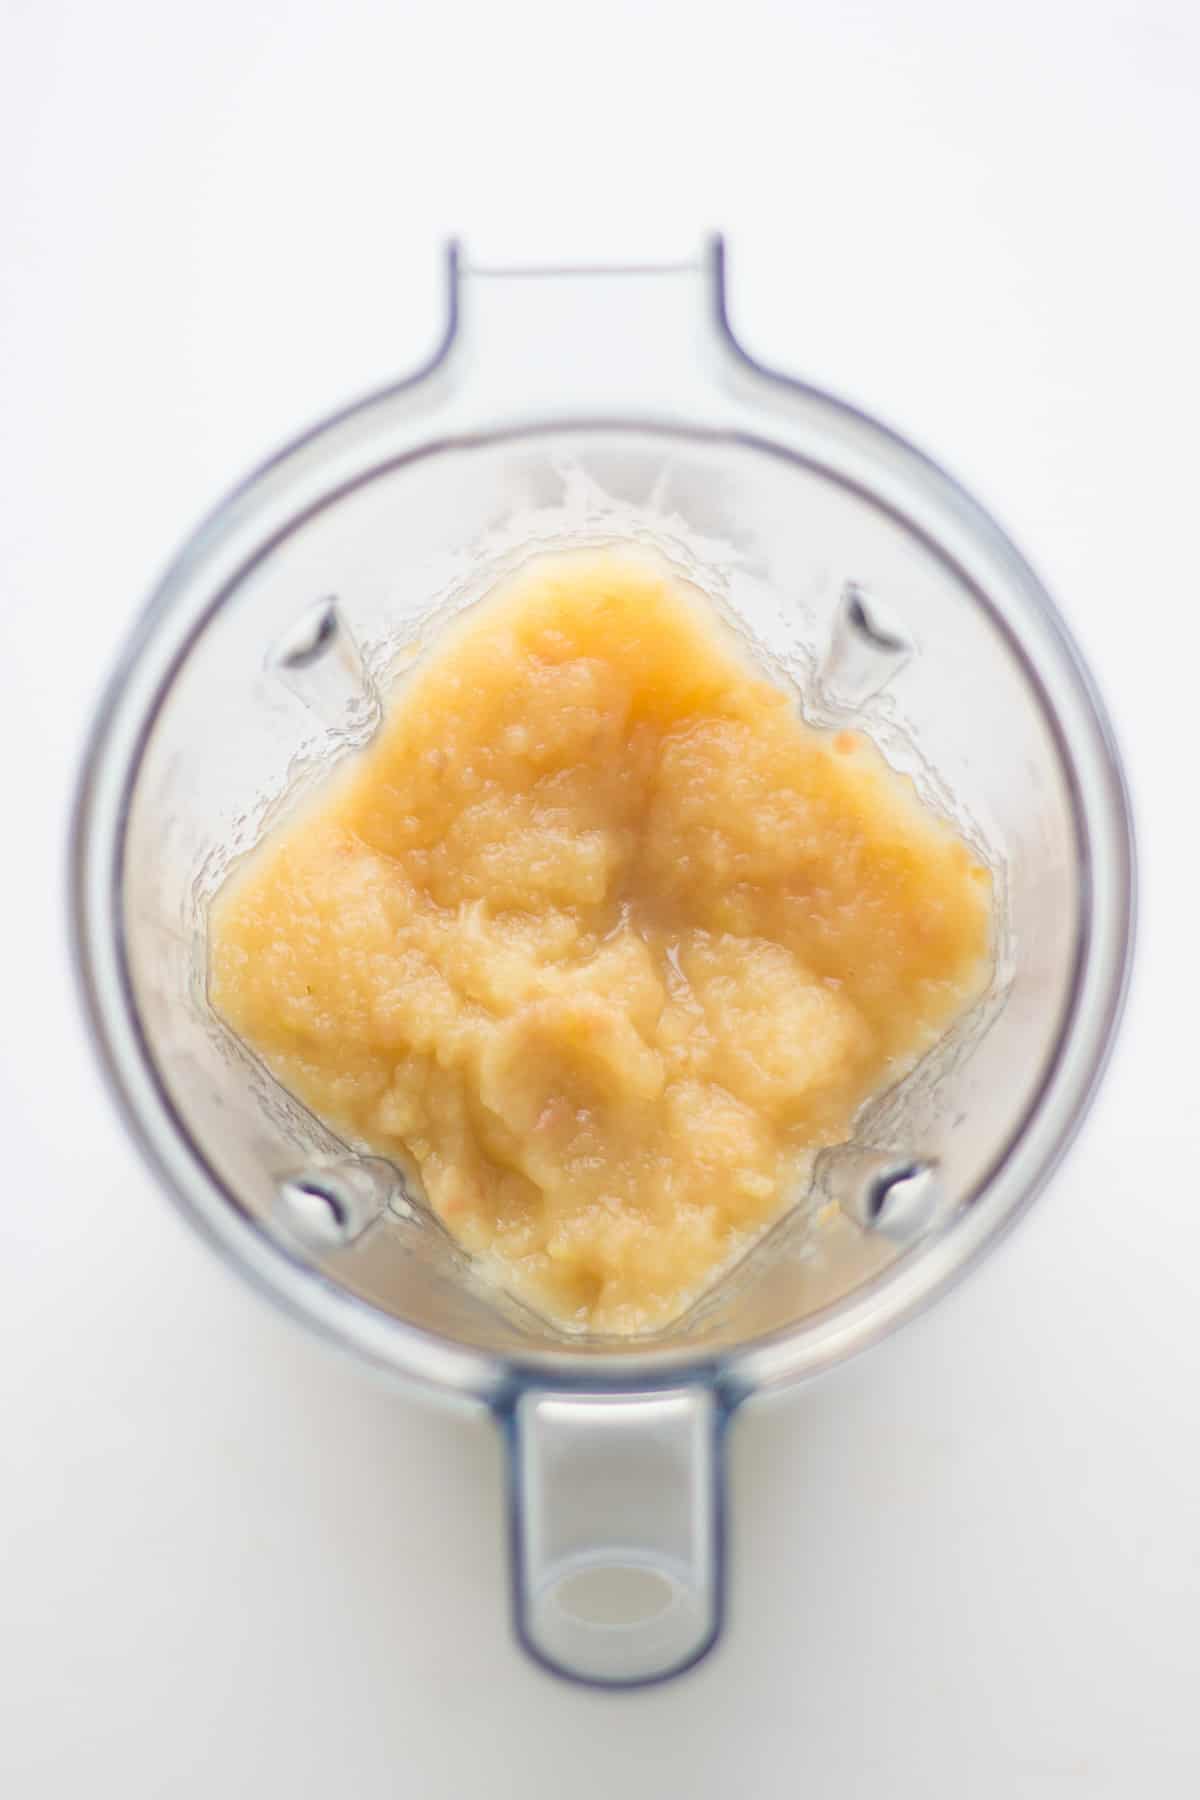 Chunky applesauce in a blender.